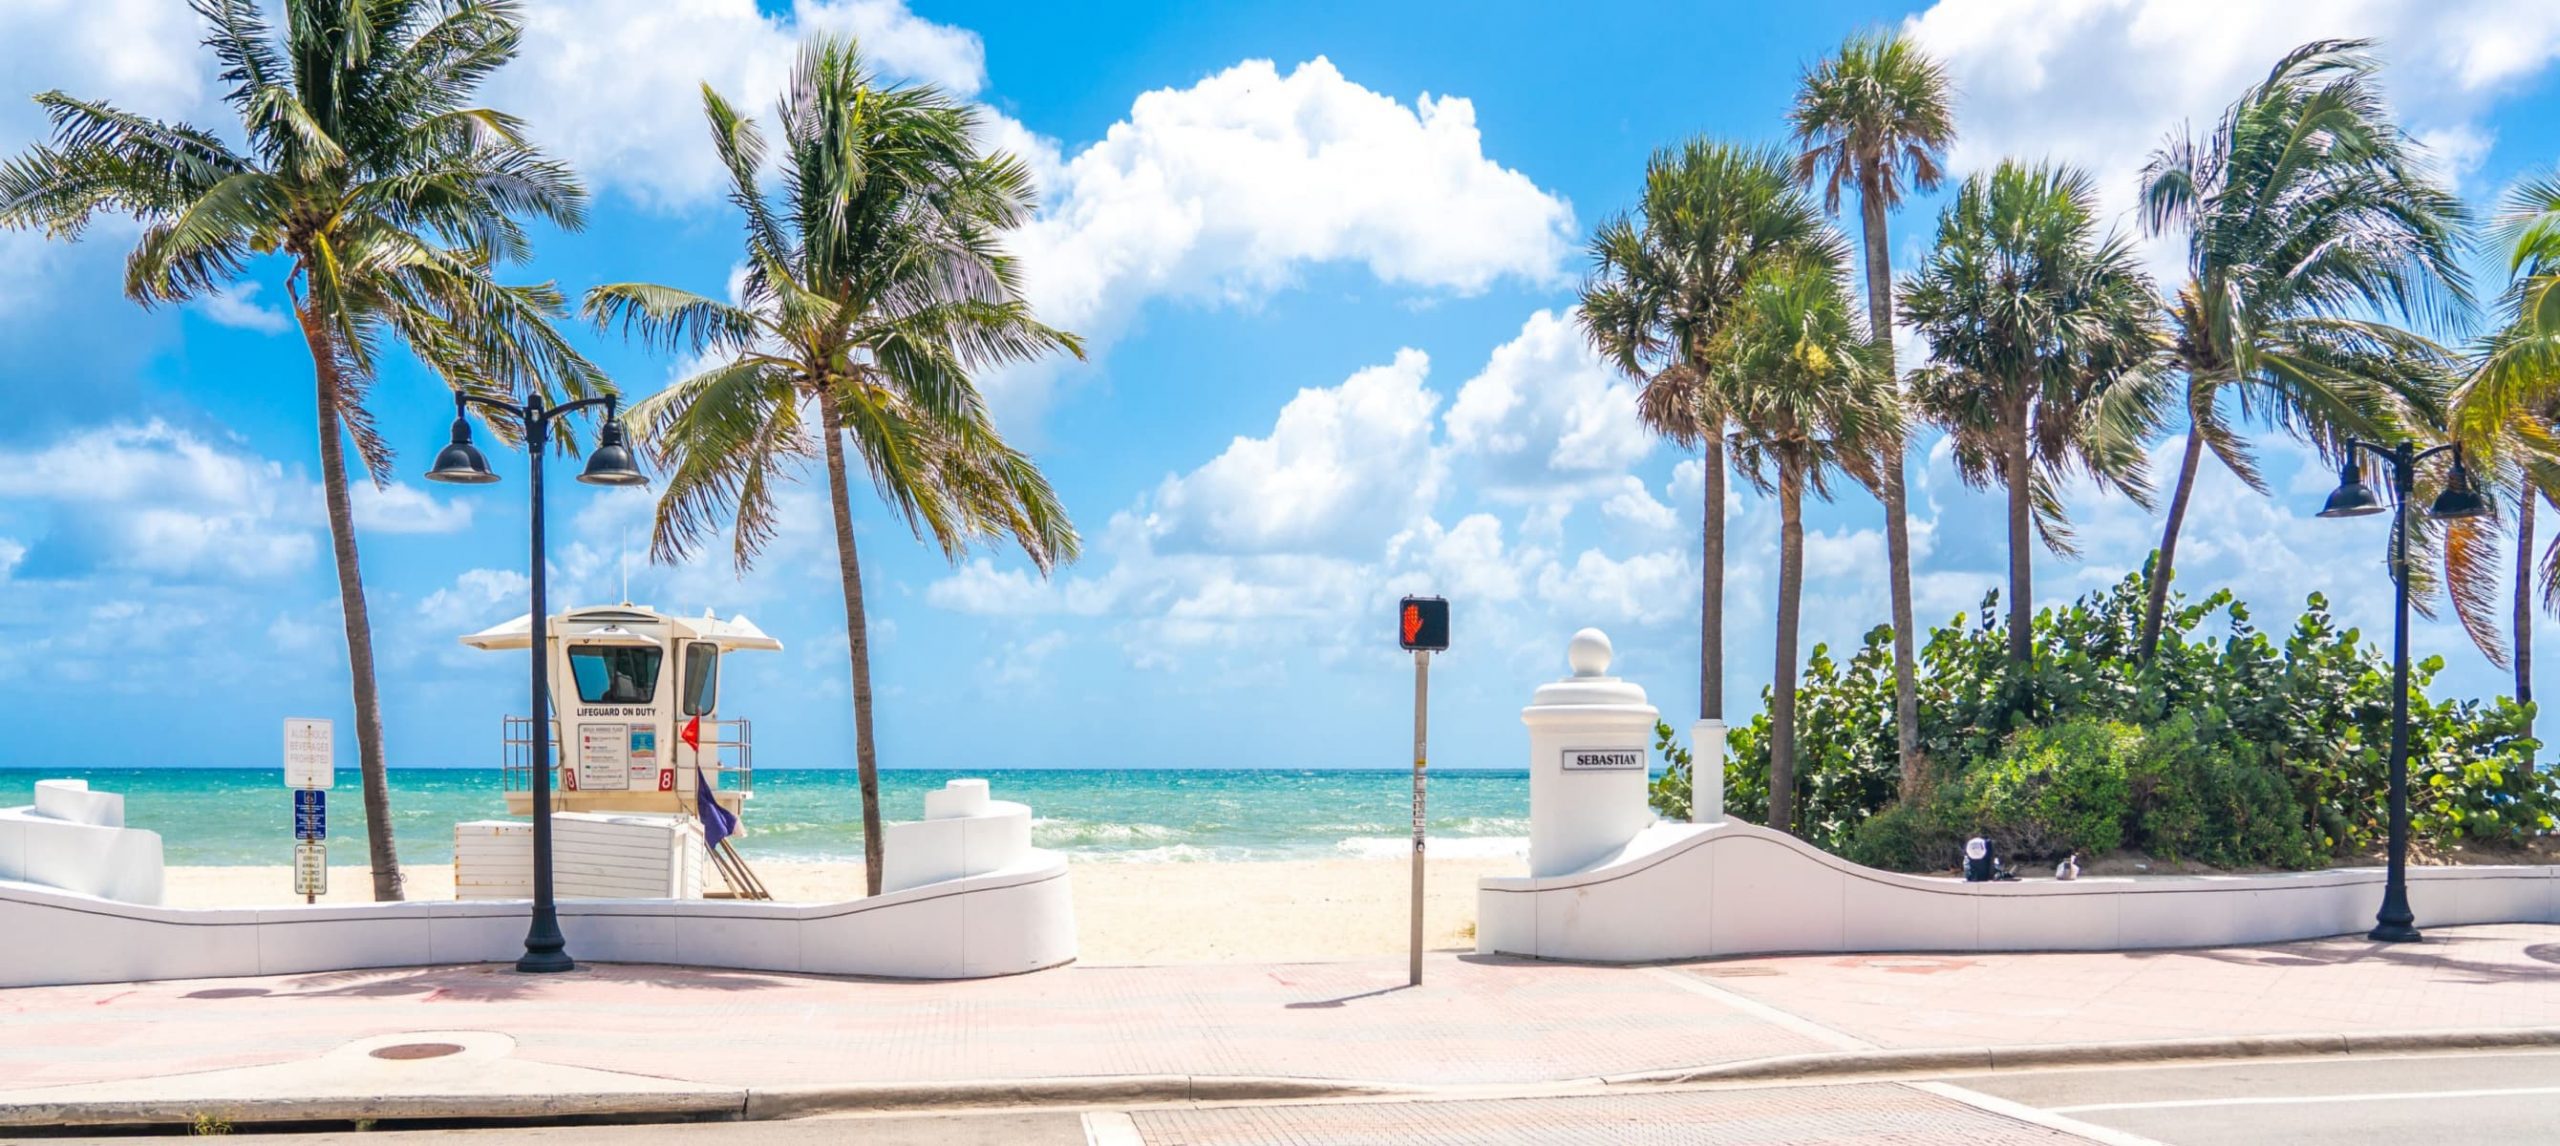 A beach in Lauderdale, FL